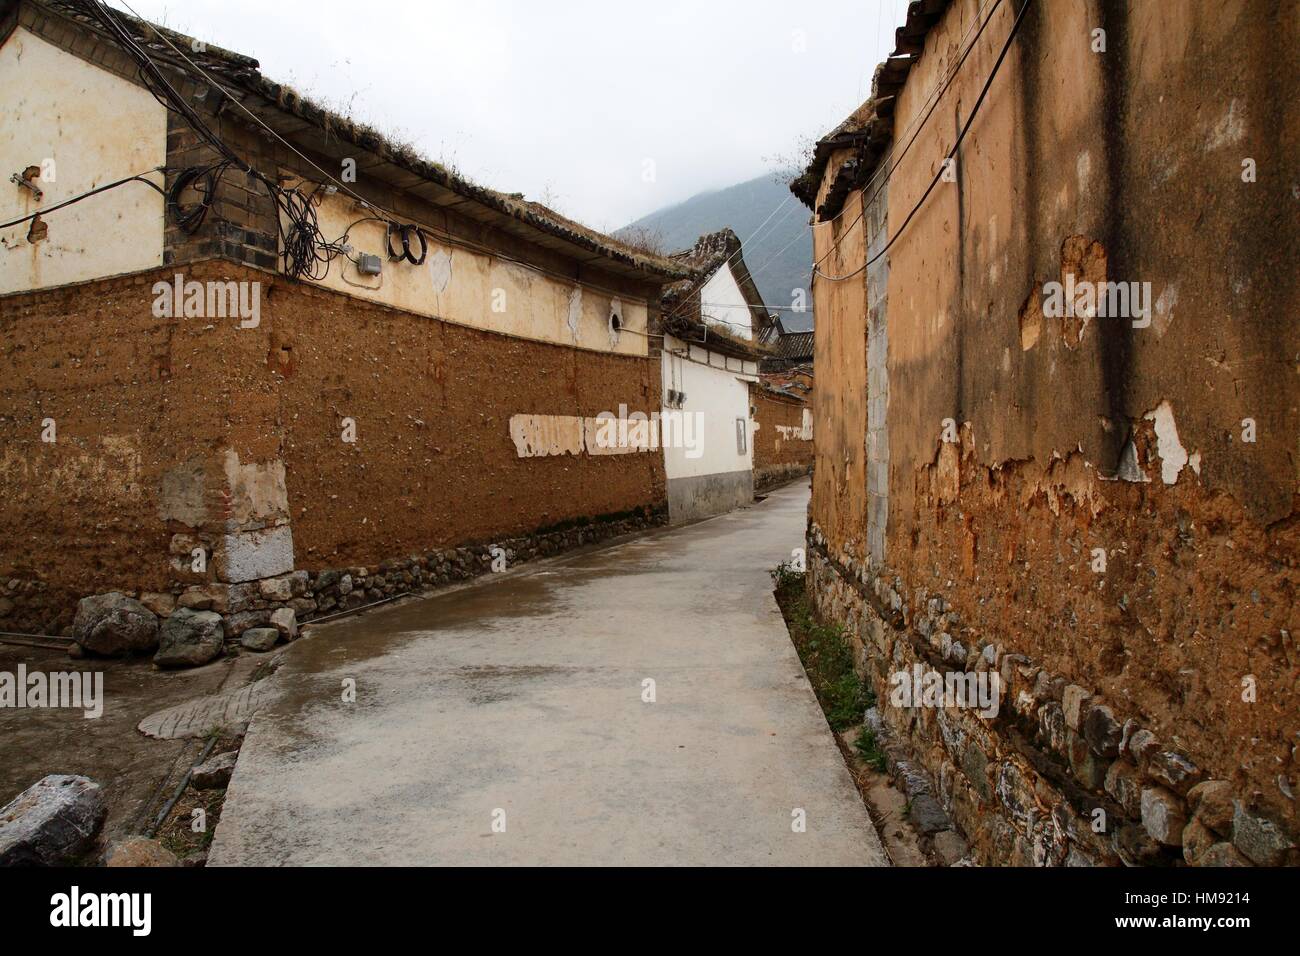 Caratteristica architetturale circa della Minoranza Bai, Dali, nella provincia dello Yunnan in Cina Foto Stock